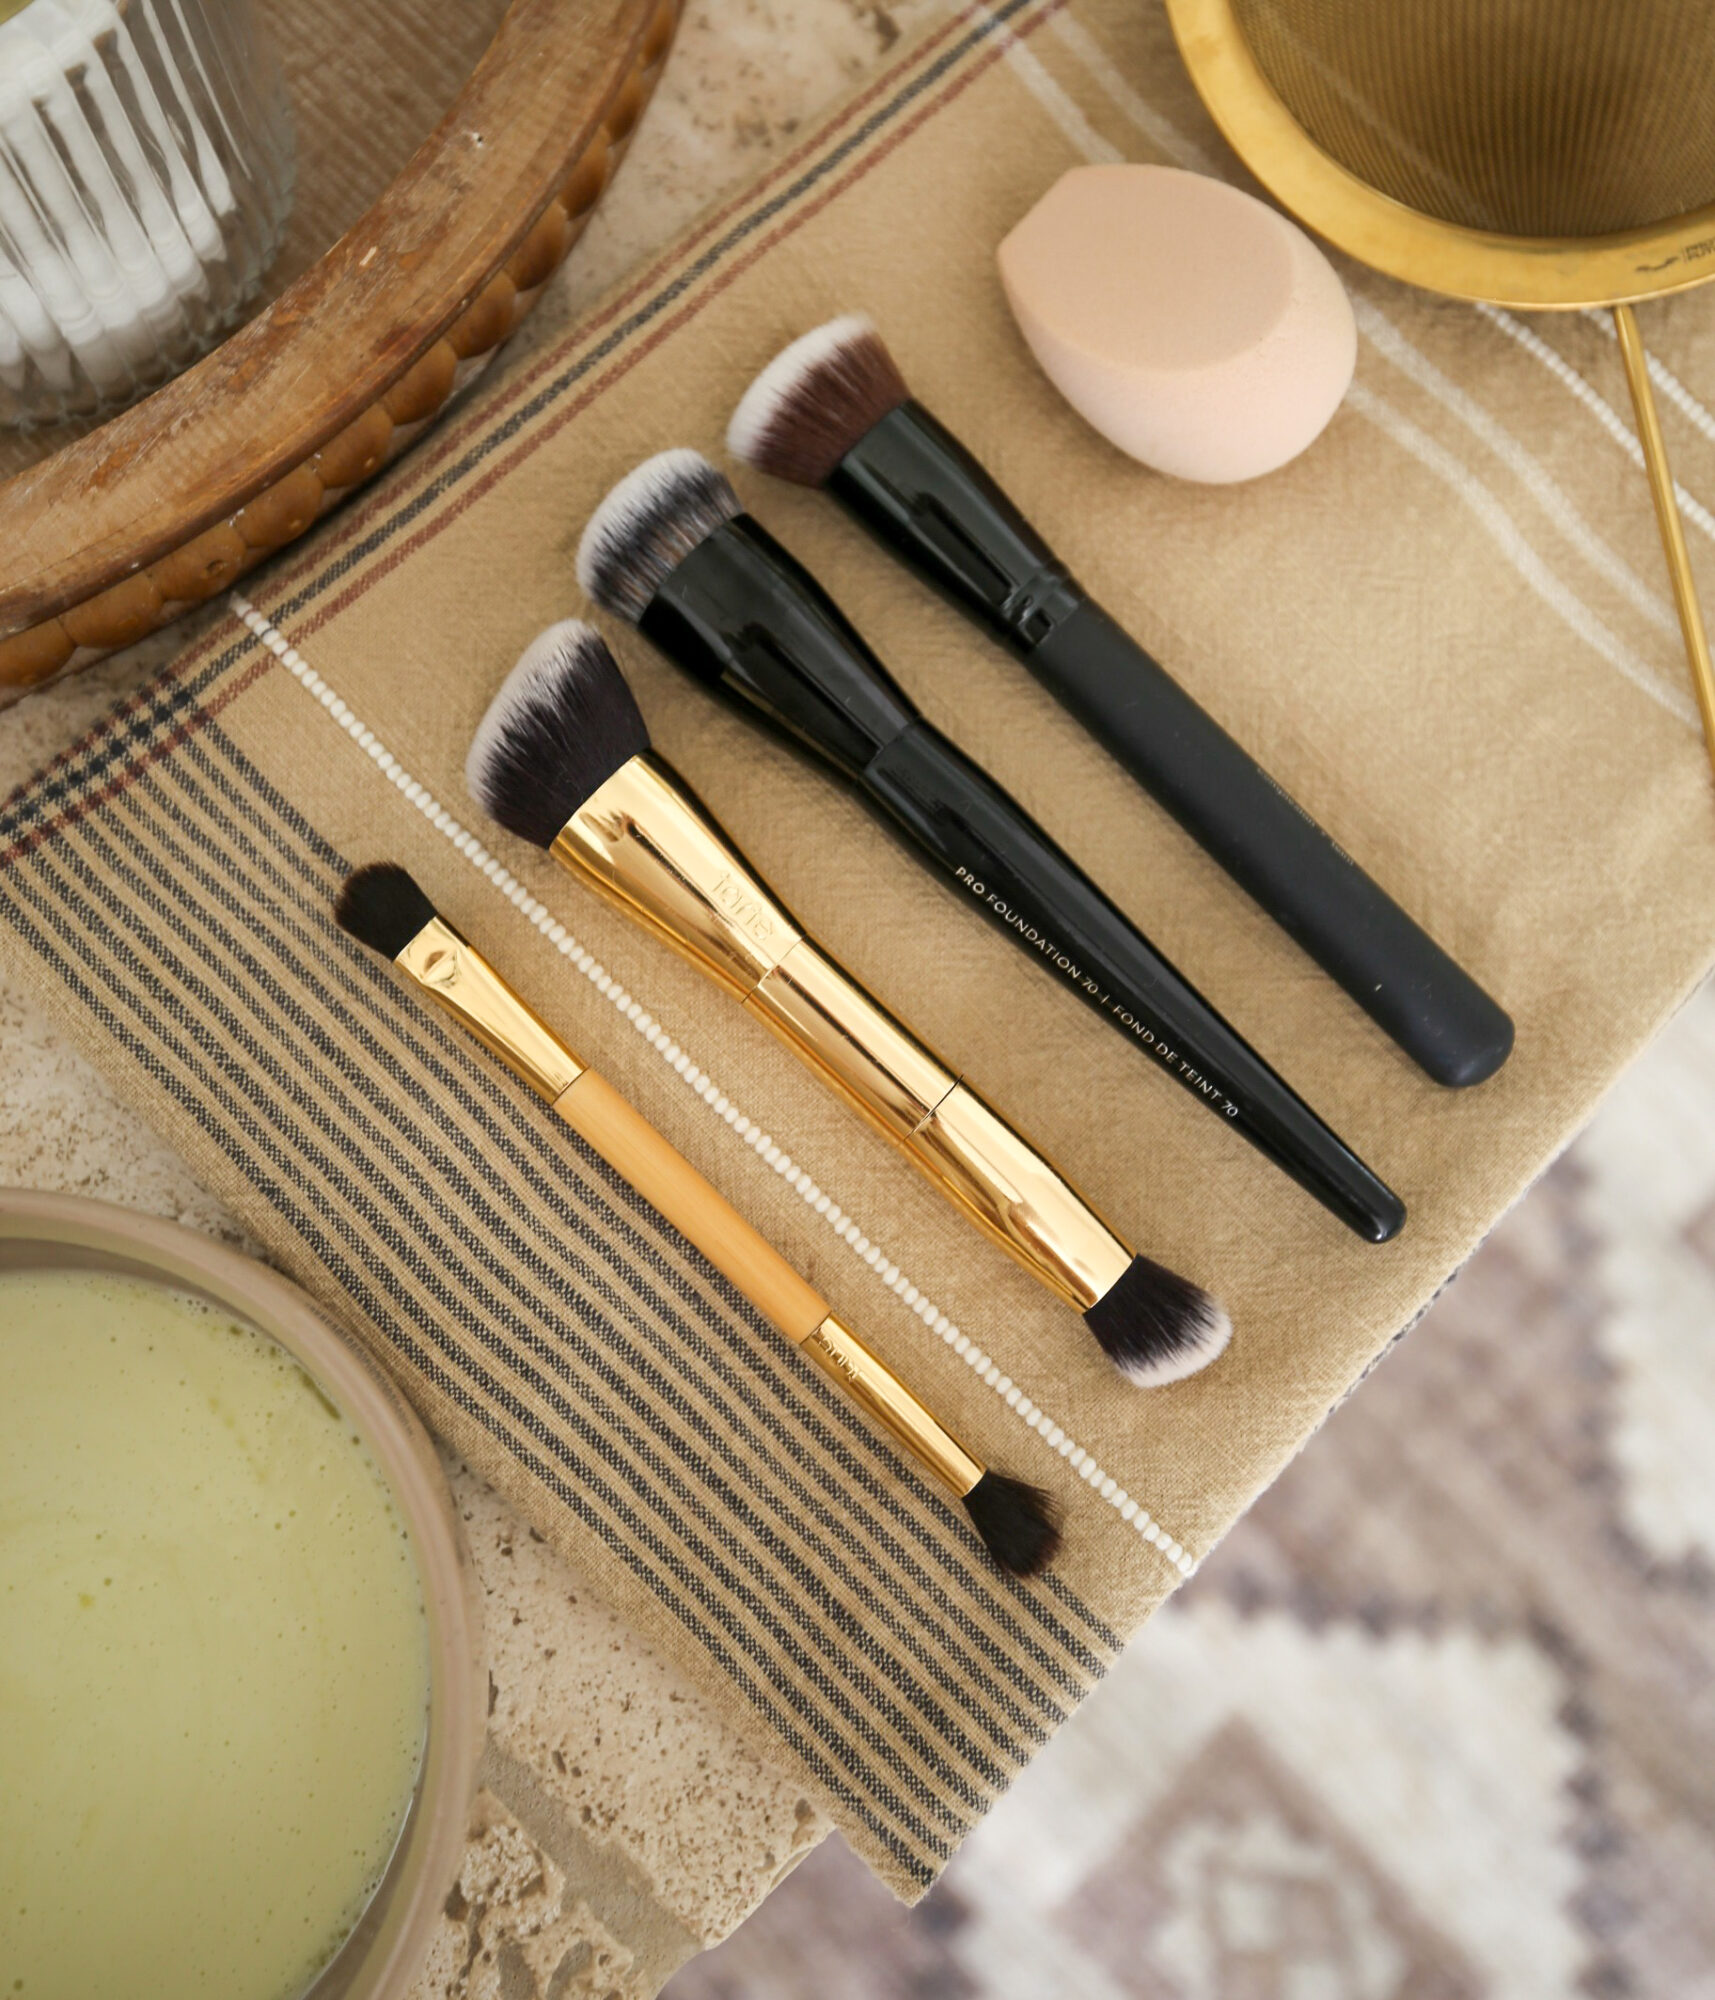 DIY makeup brush and sponge cleaner